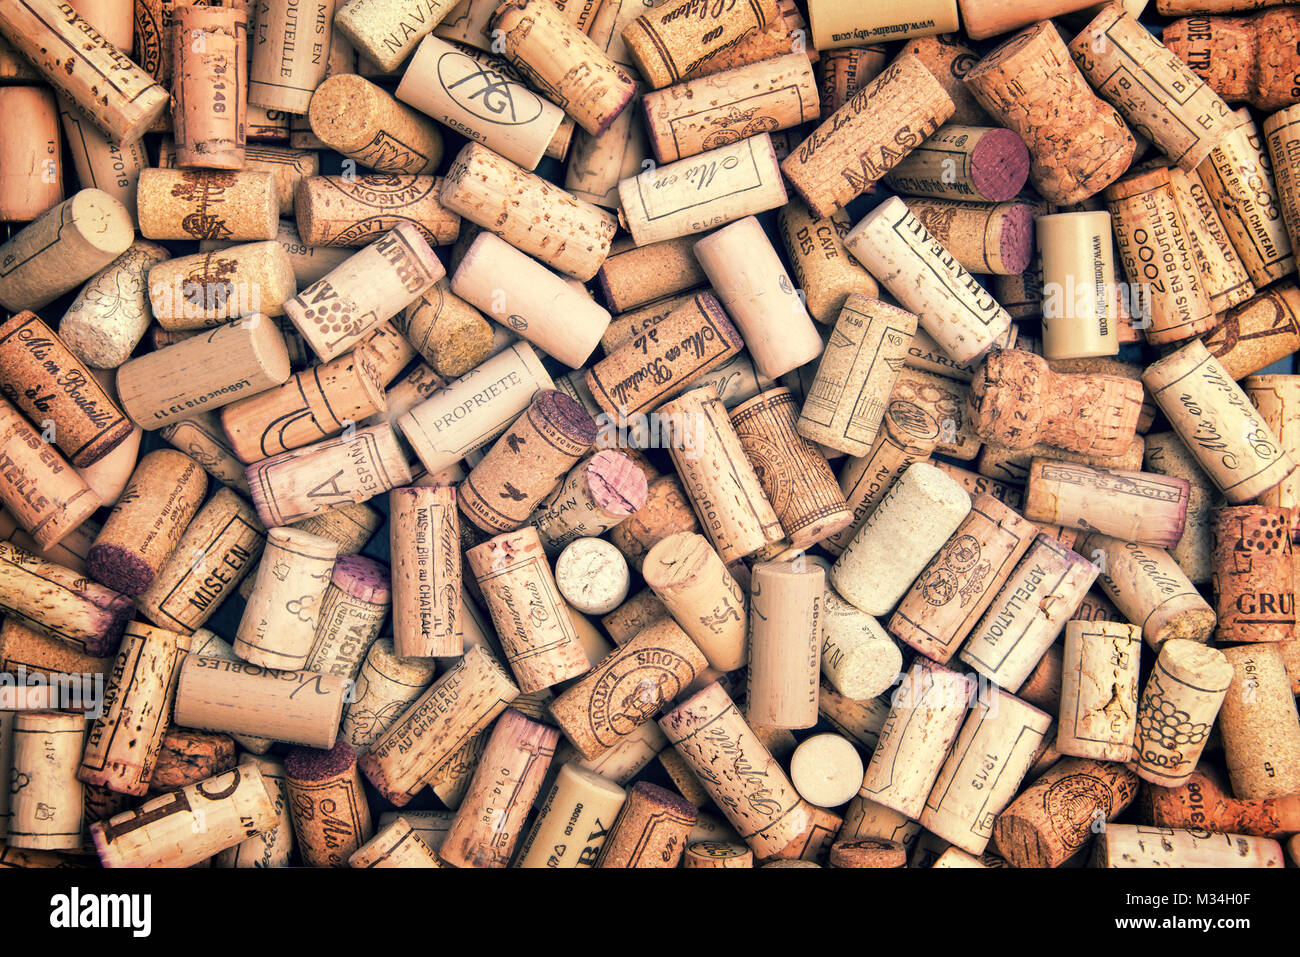 Wine corks background Banque D'Images